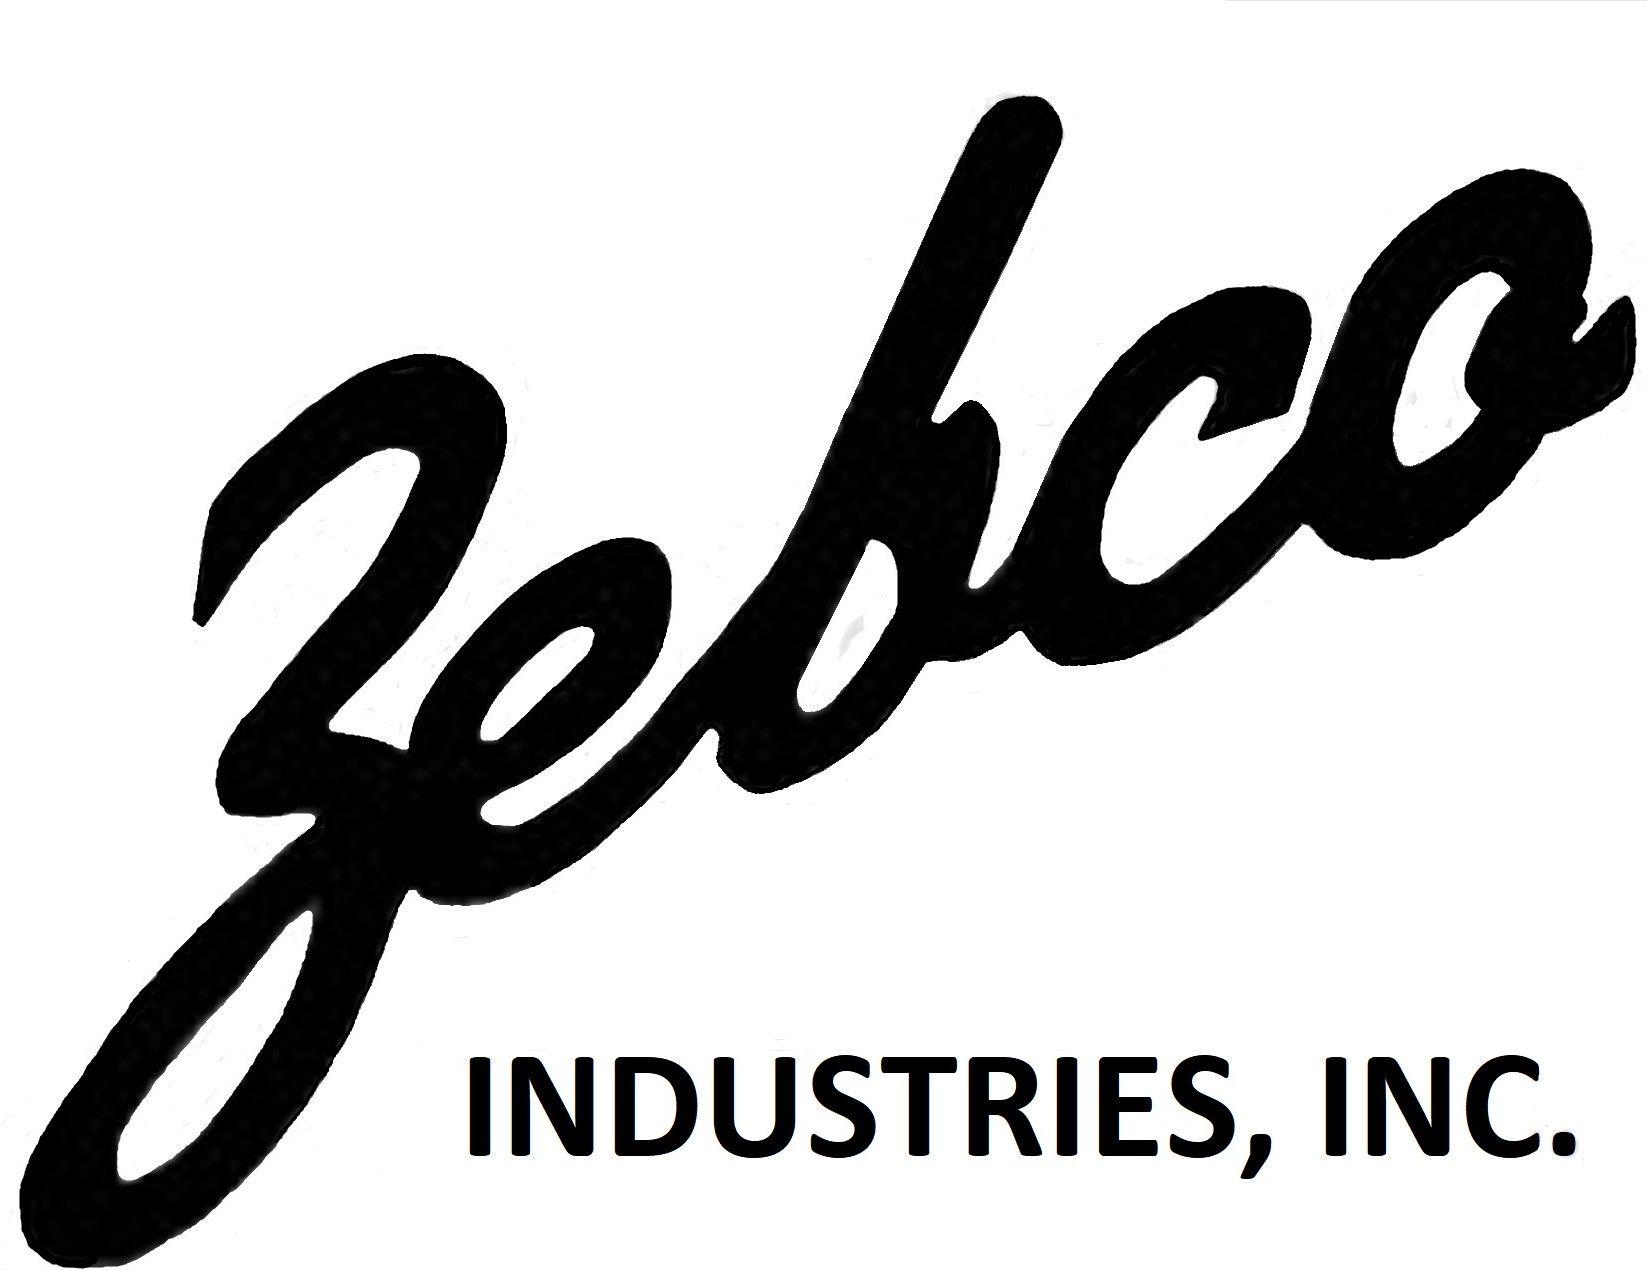 Zebco Logo - About Us 2 - Zebco Industries Inc.